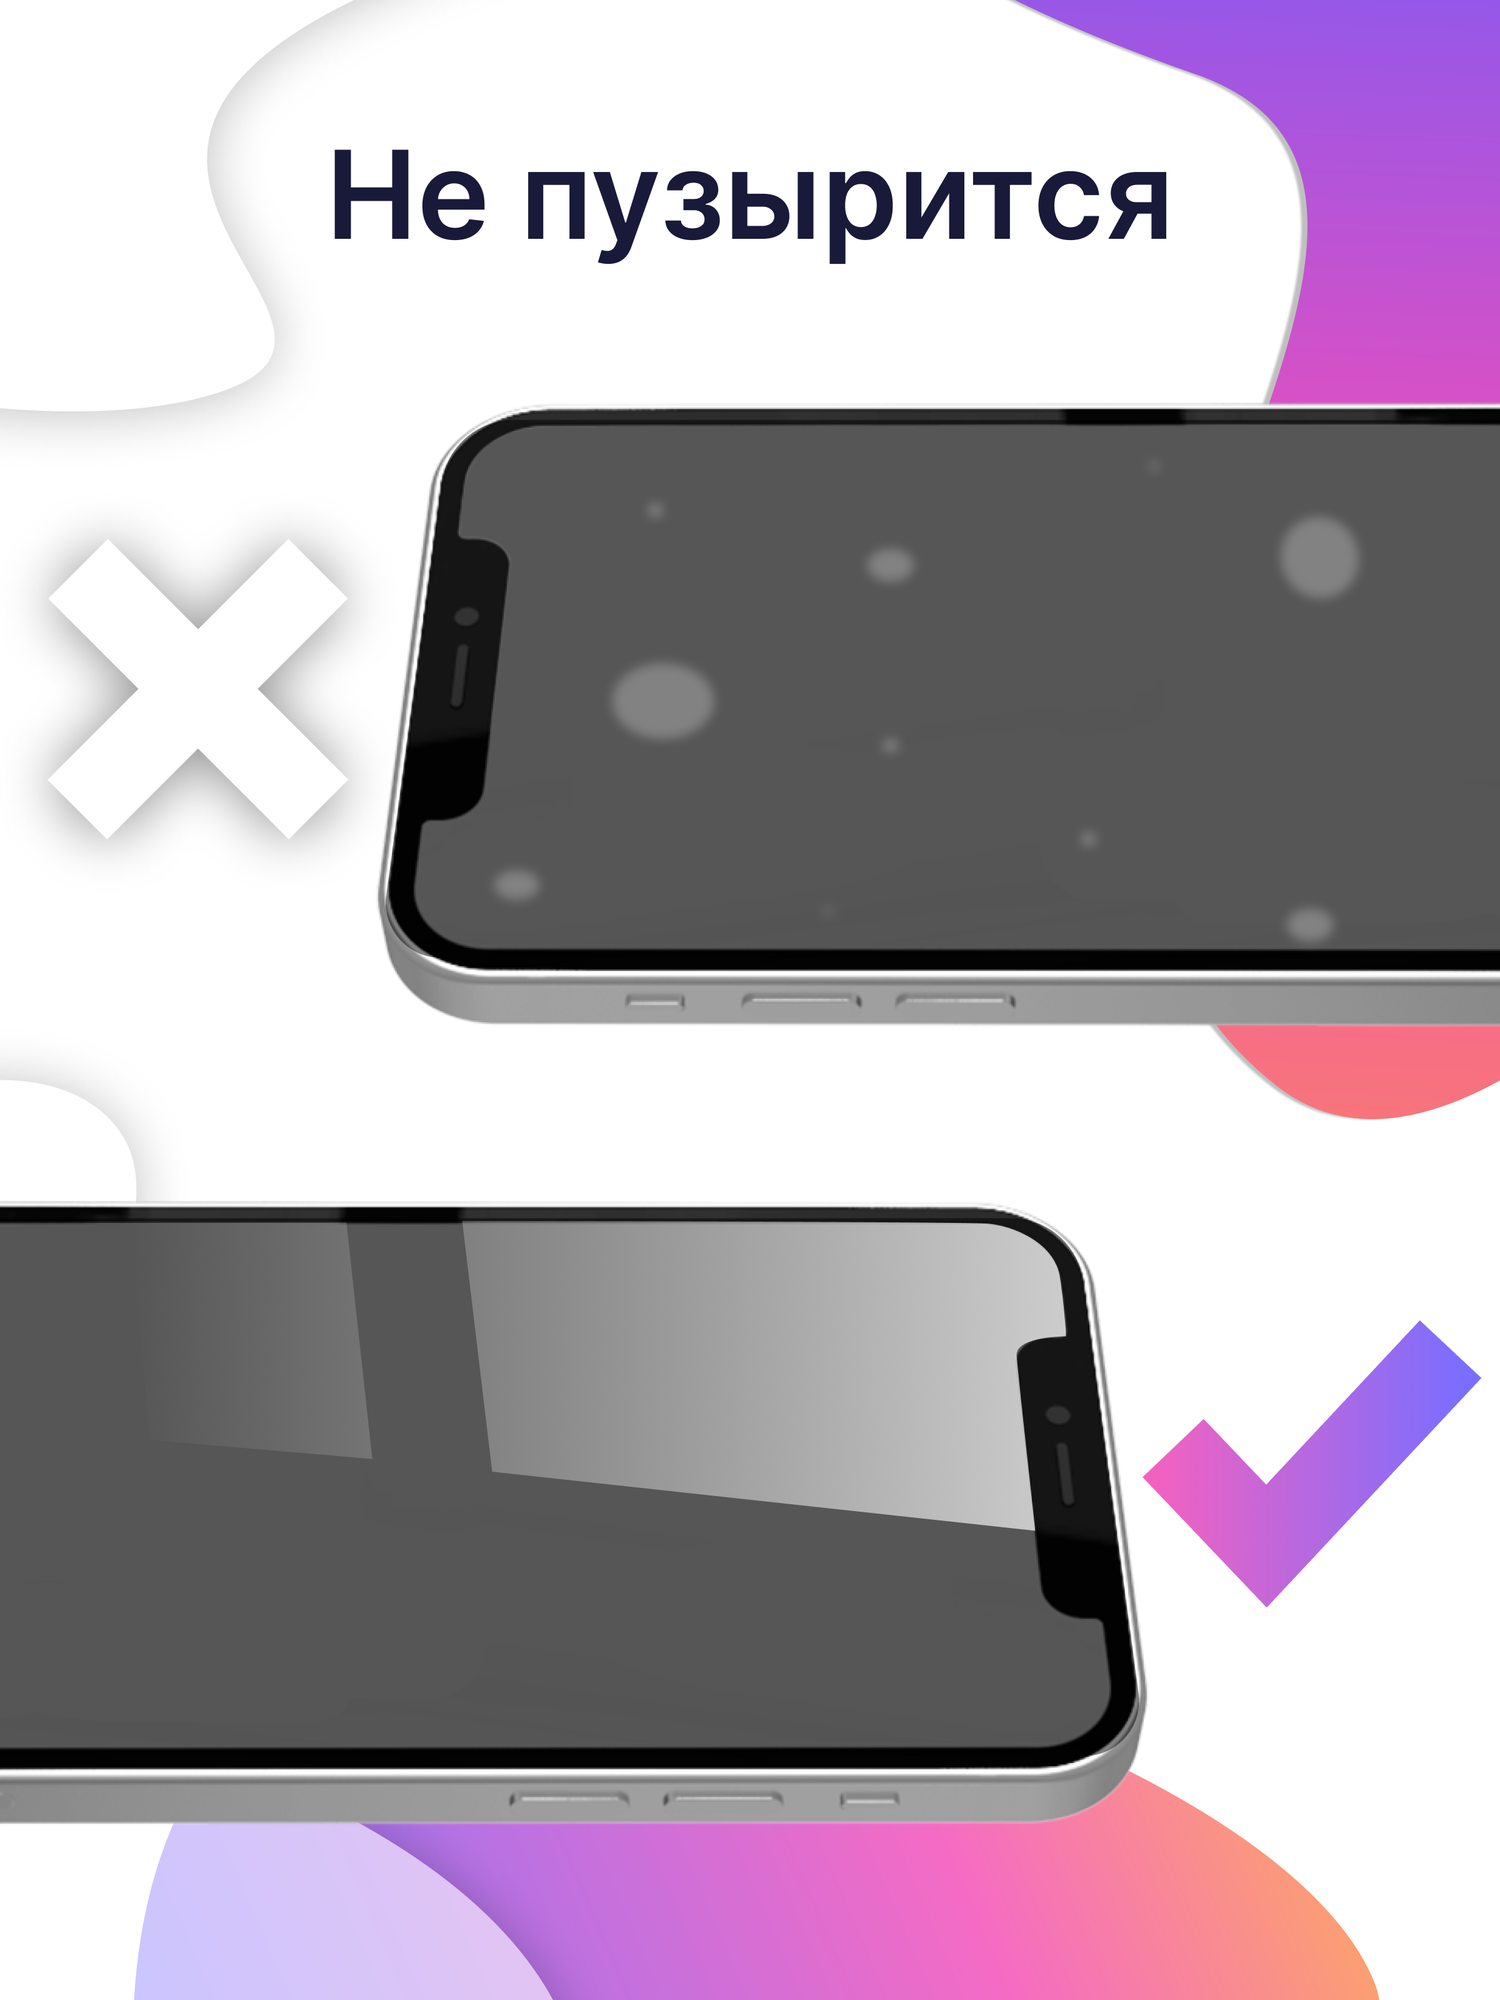 Комплект 3  Защитное стекло для телефона Apple iPhone X XS и 11Pro / Набор противоударных стекол наартфон Эпл Айфон Х ХС и 11 Про / Прозрачное